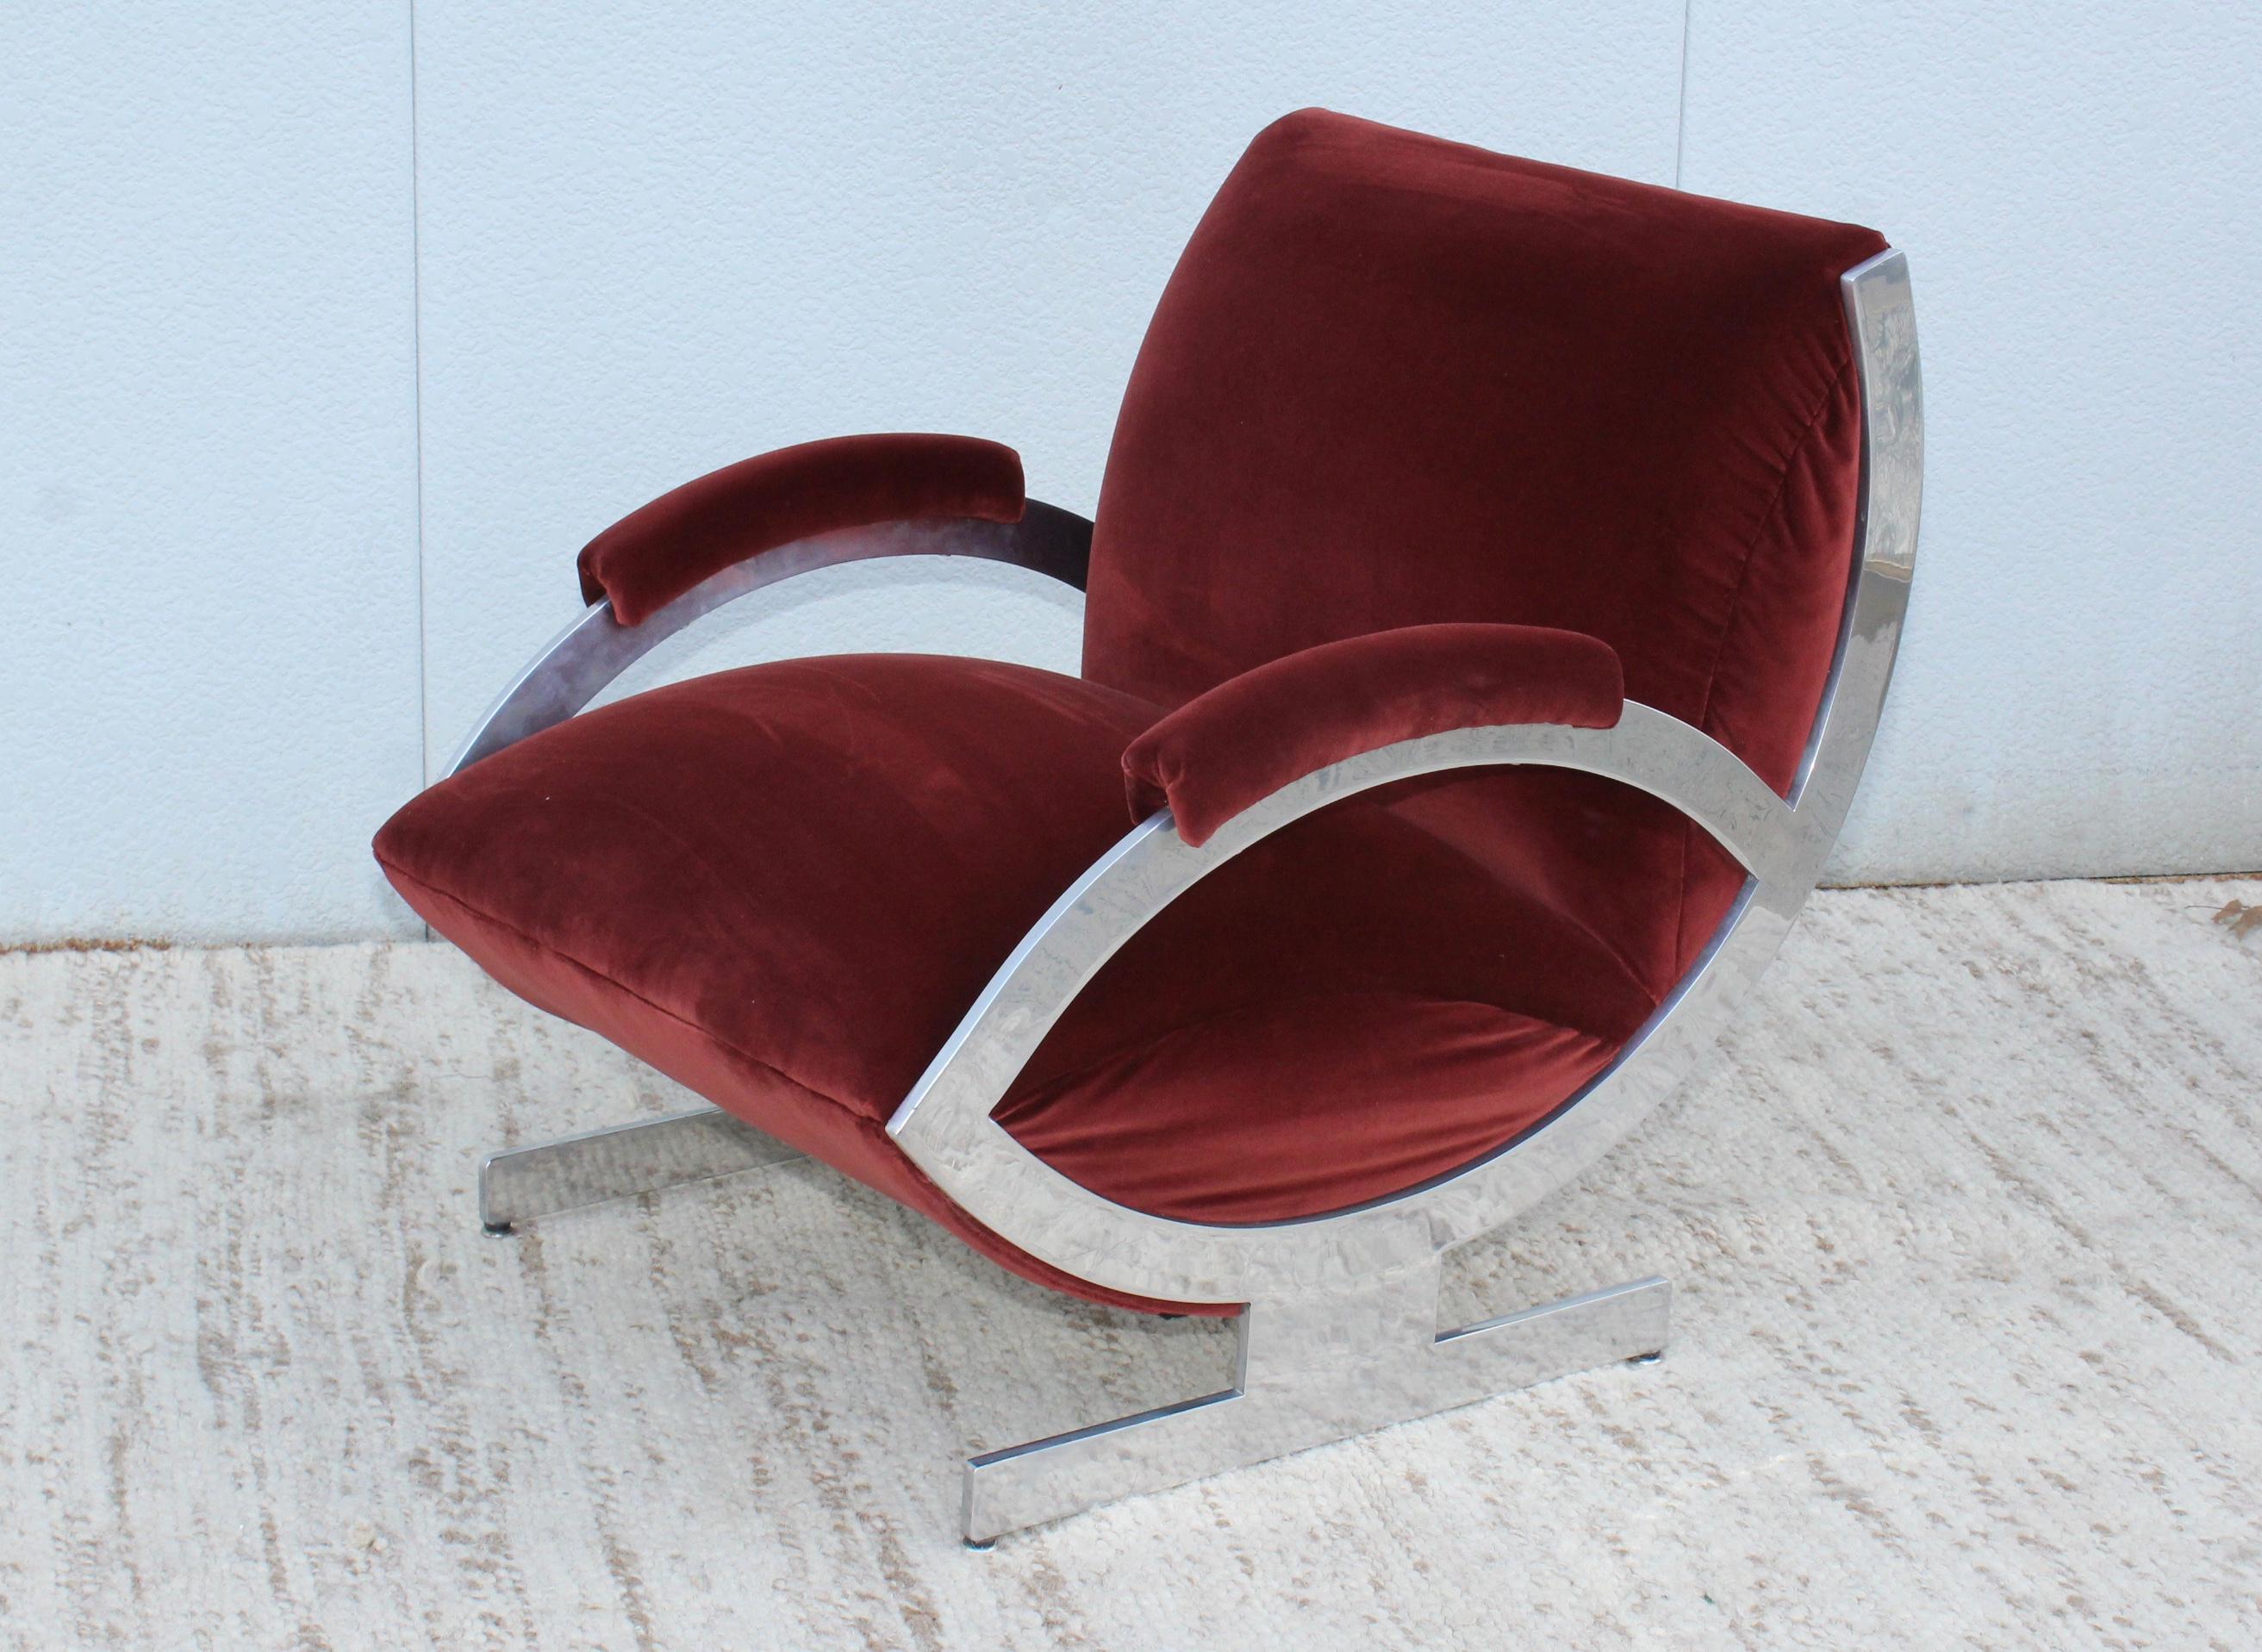 1970s Art Deco style aluminum frame with velvet upholstery Italian lounge chair.